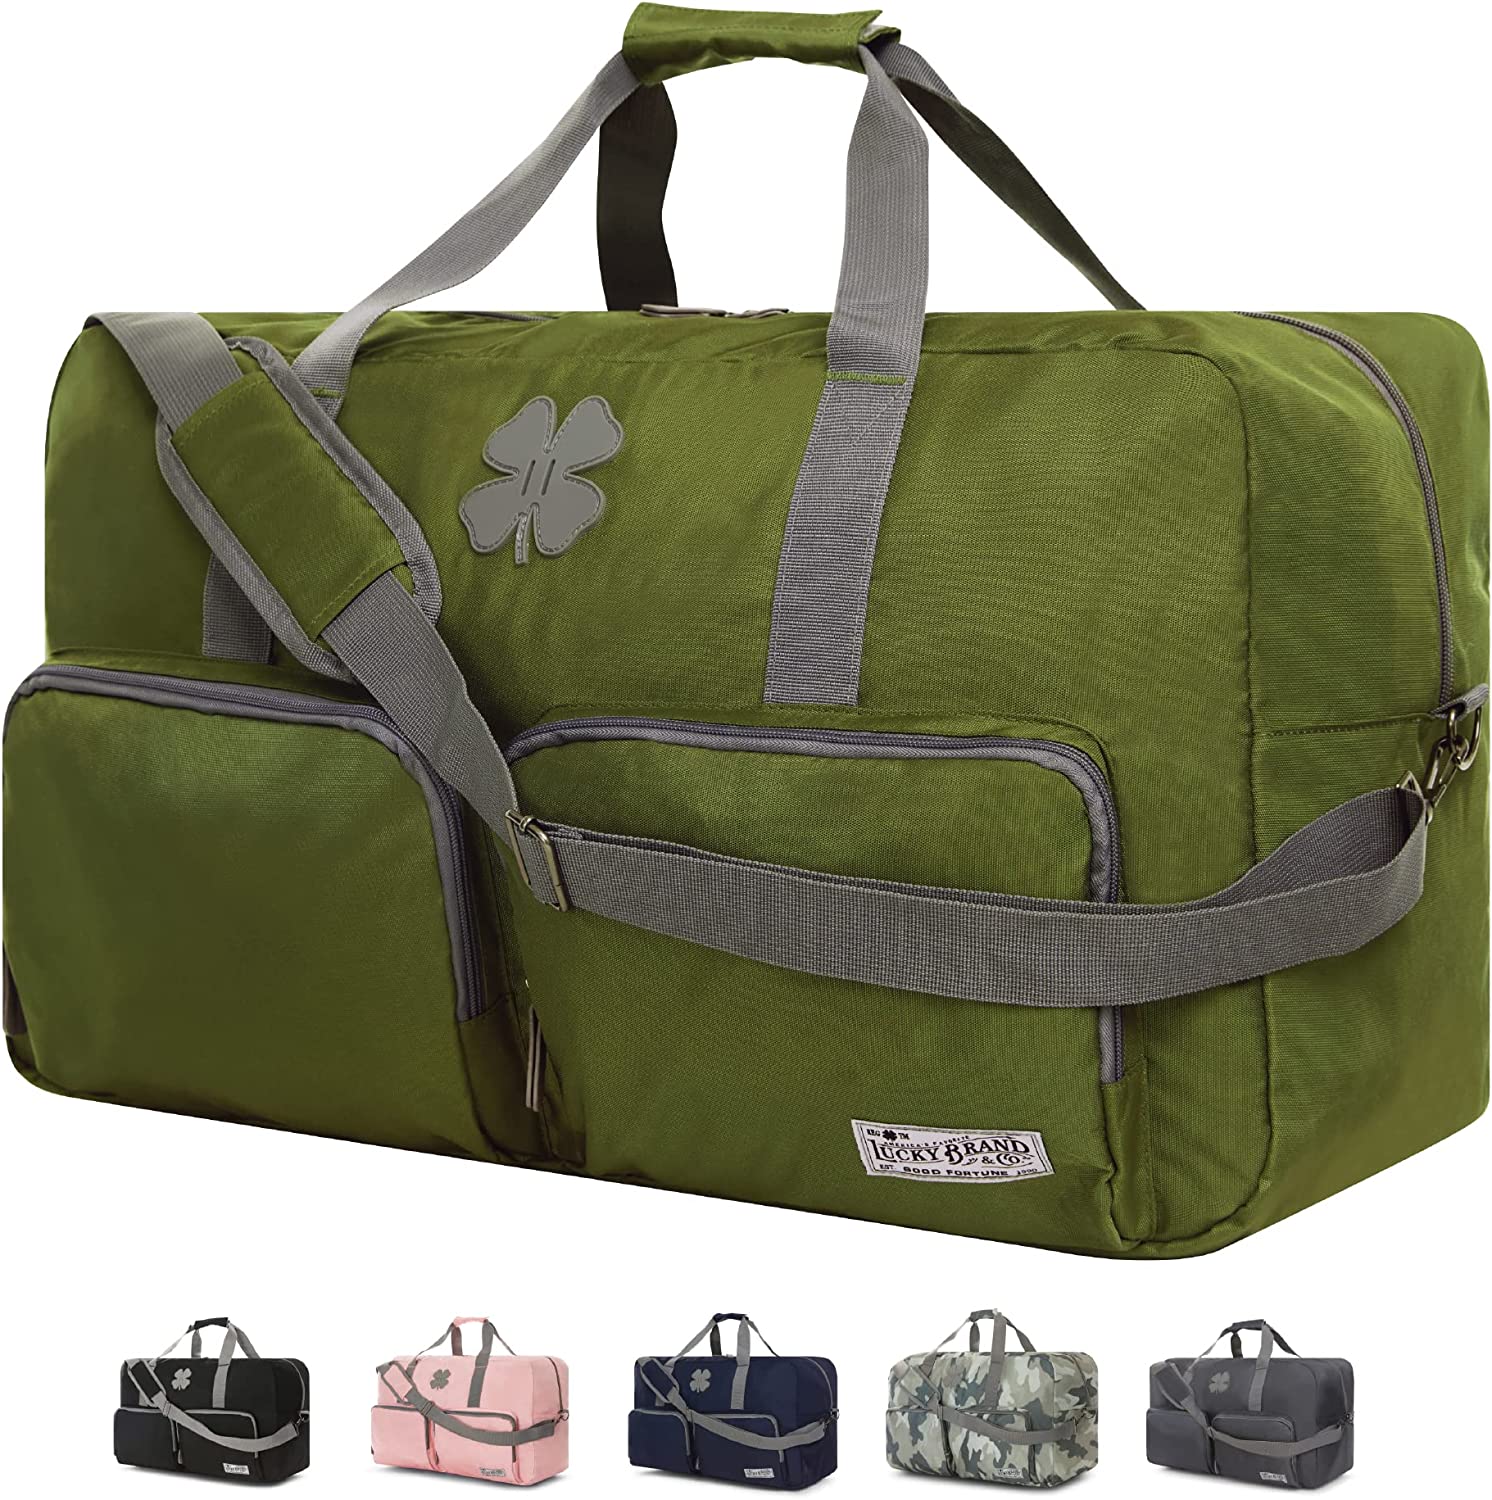 Sh2396 Luggage Men Luxury Duffel Bags Weekender Wholesale Large